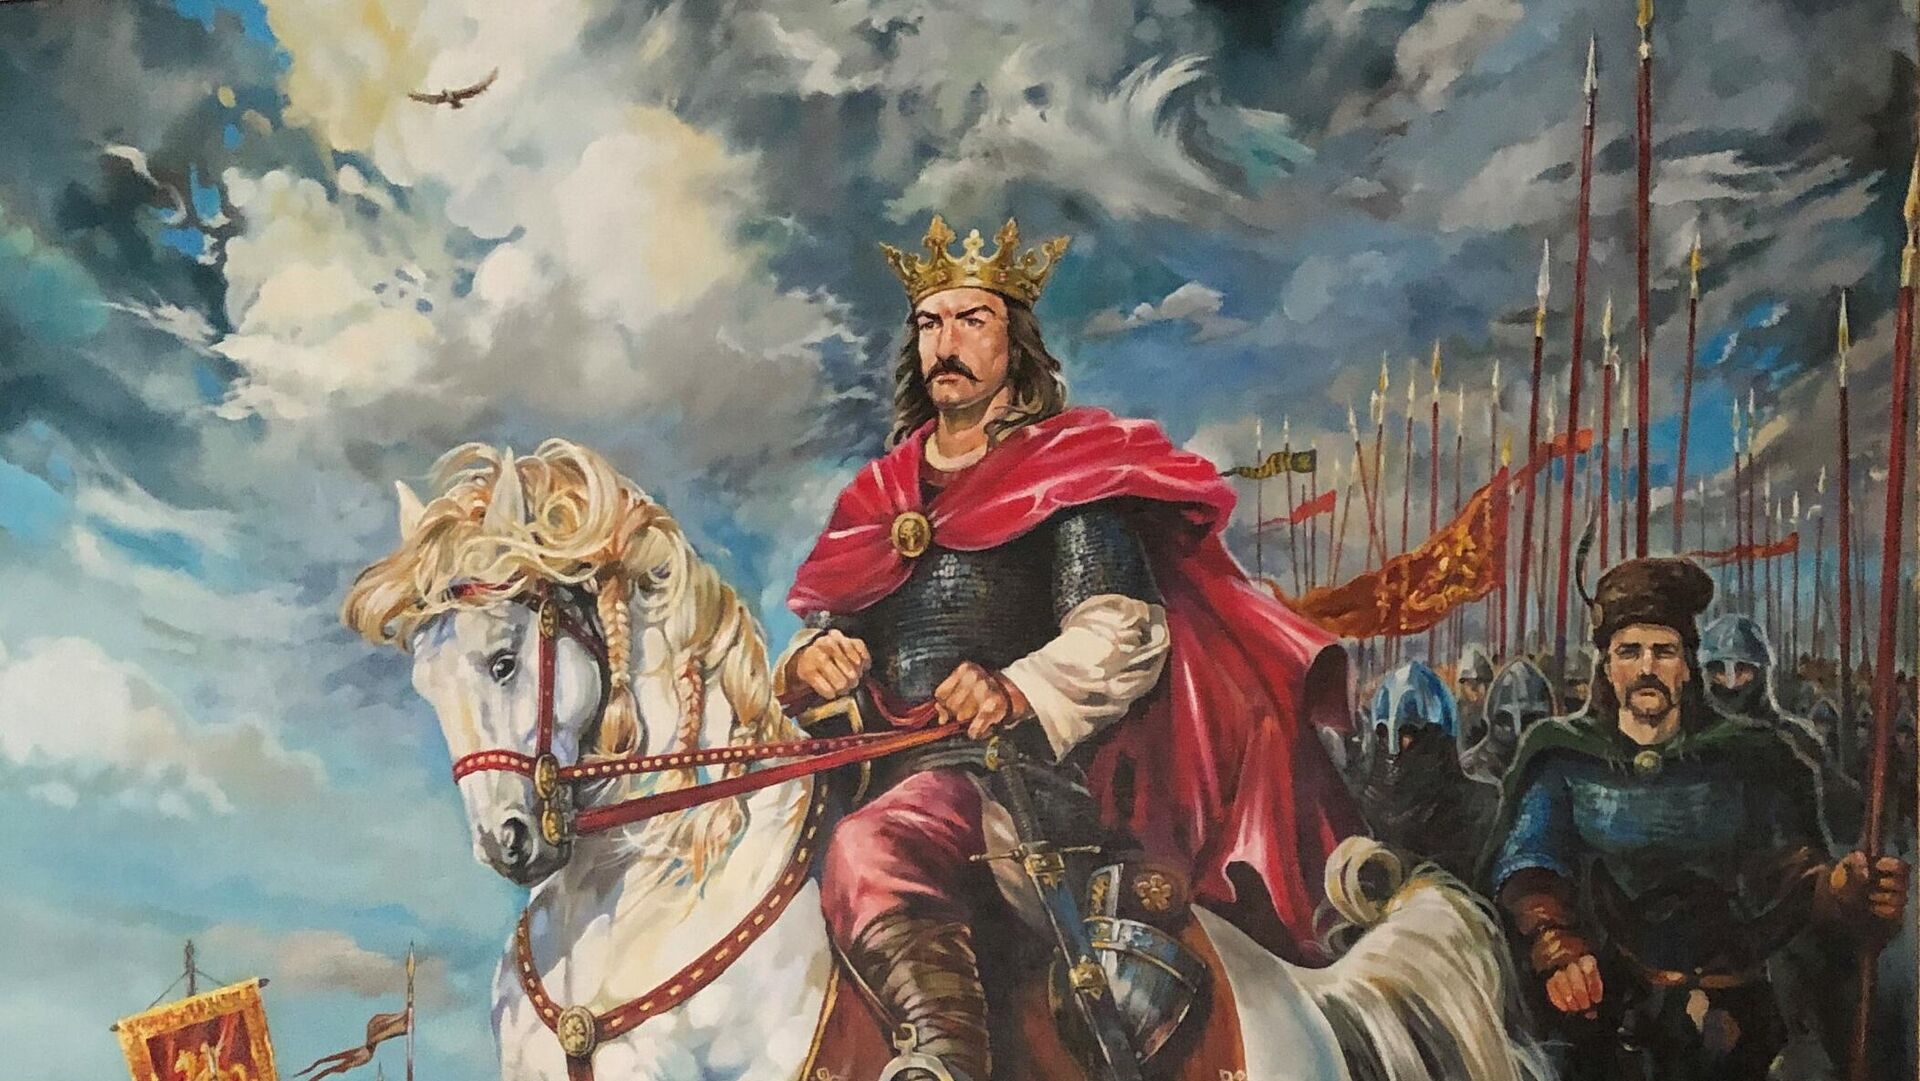 Стефан III Великий. Картина из коллекции Музея военной истории. - Sputnik Молдова, 1920, 07.11.2021